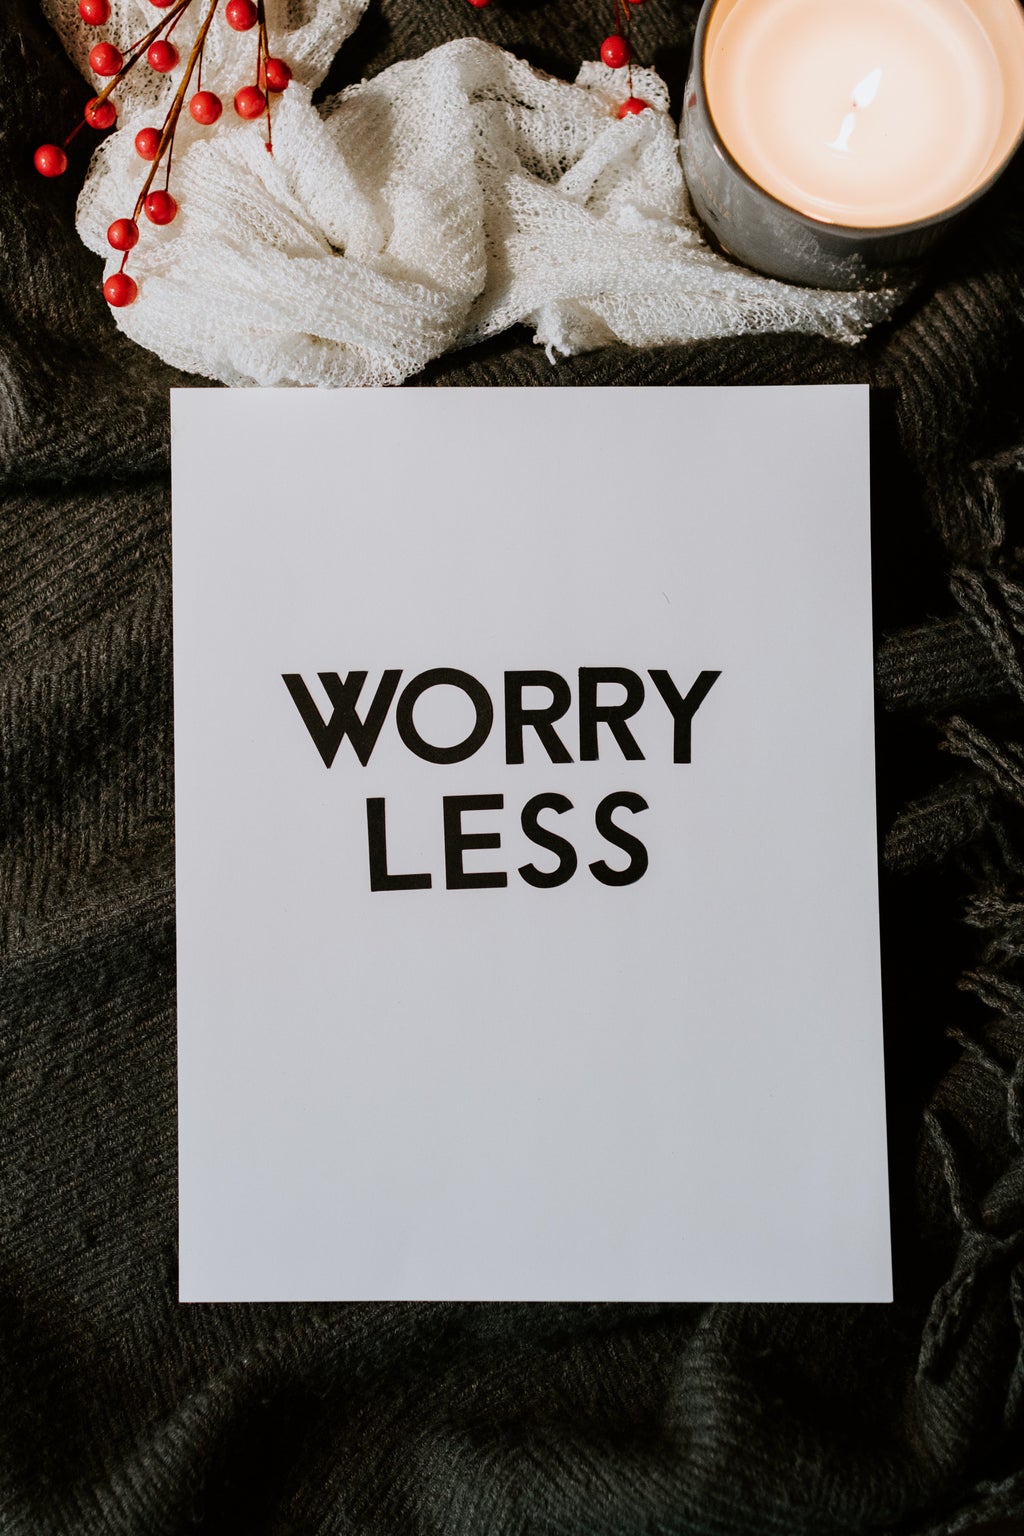 Worry Less text flatlay